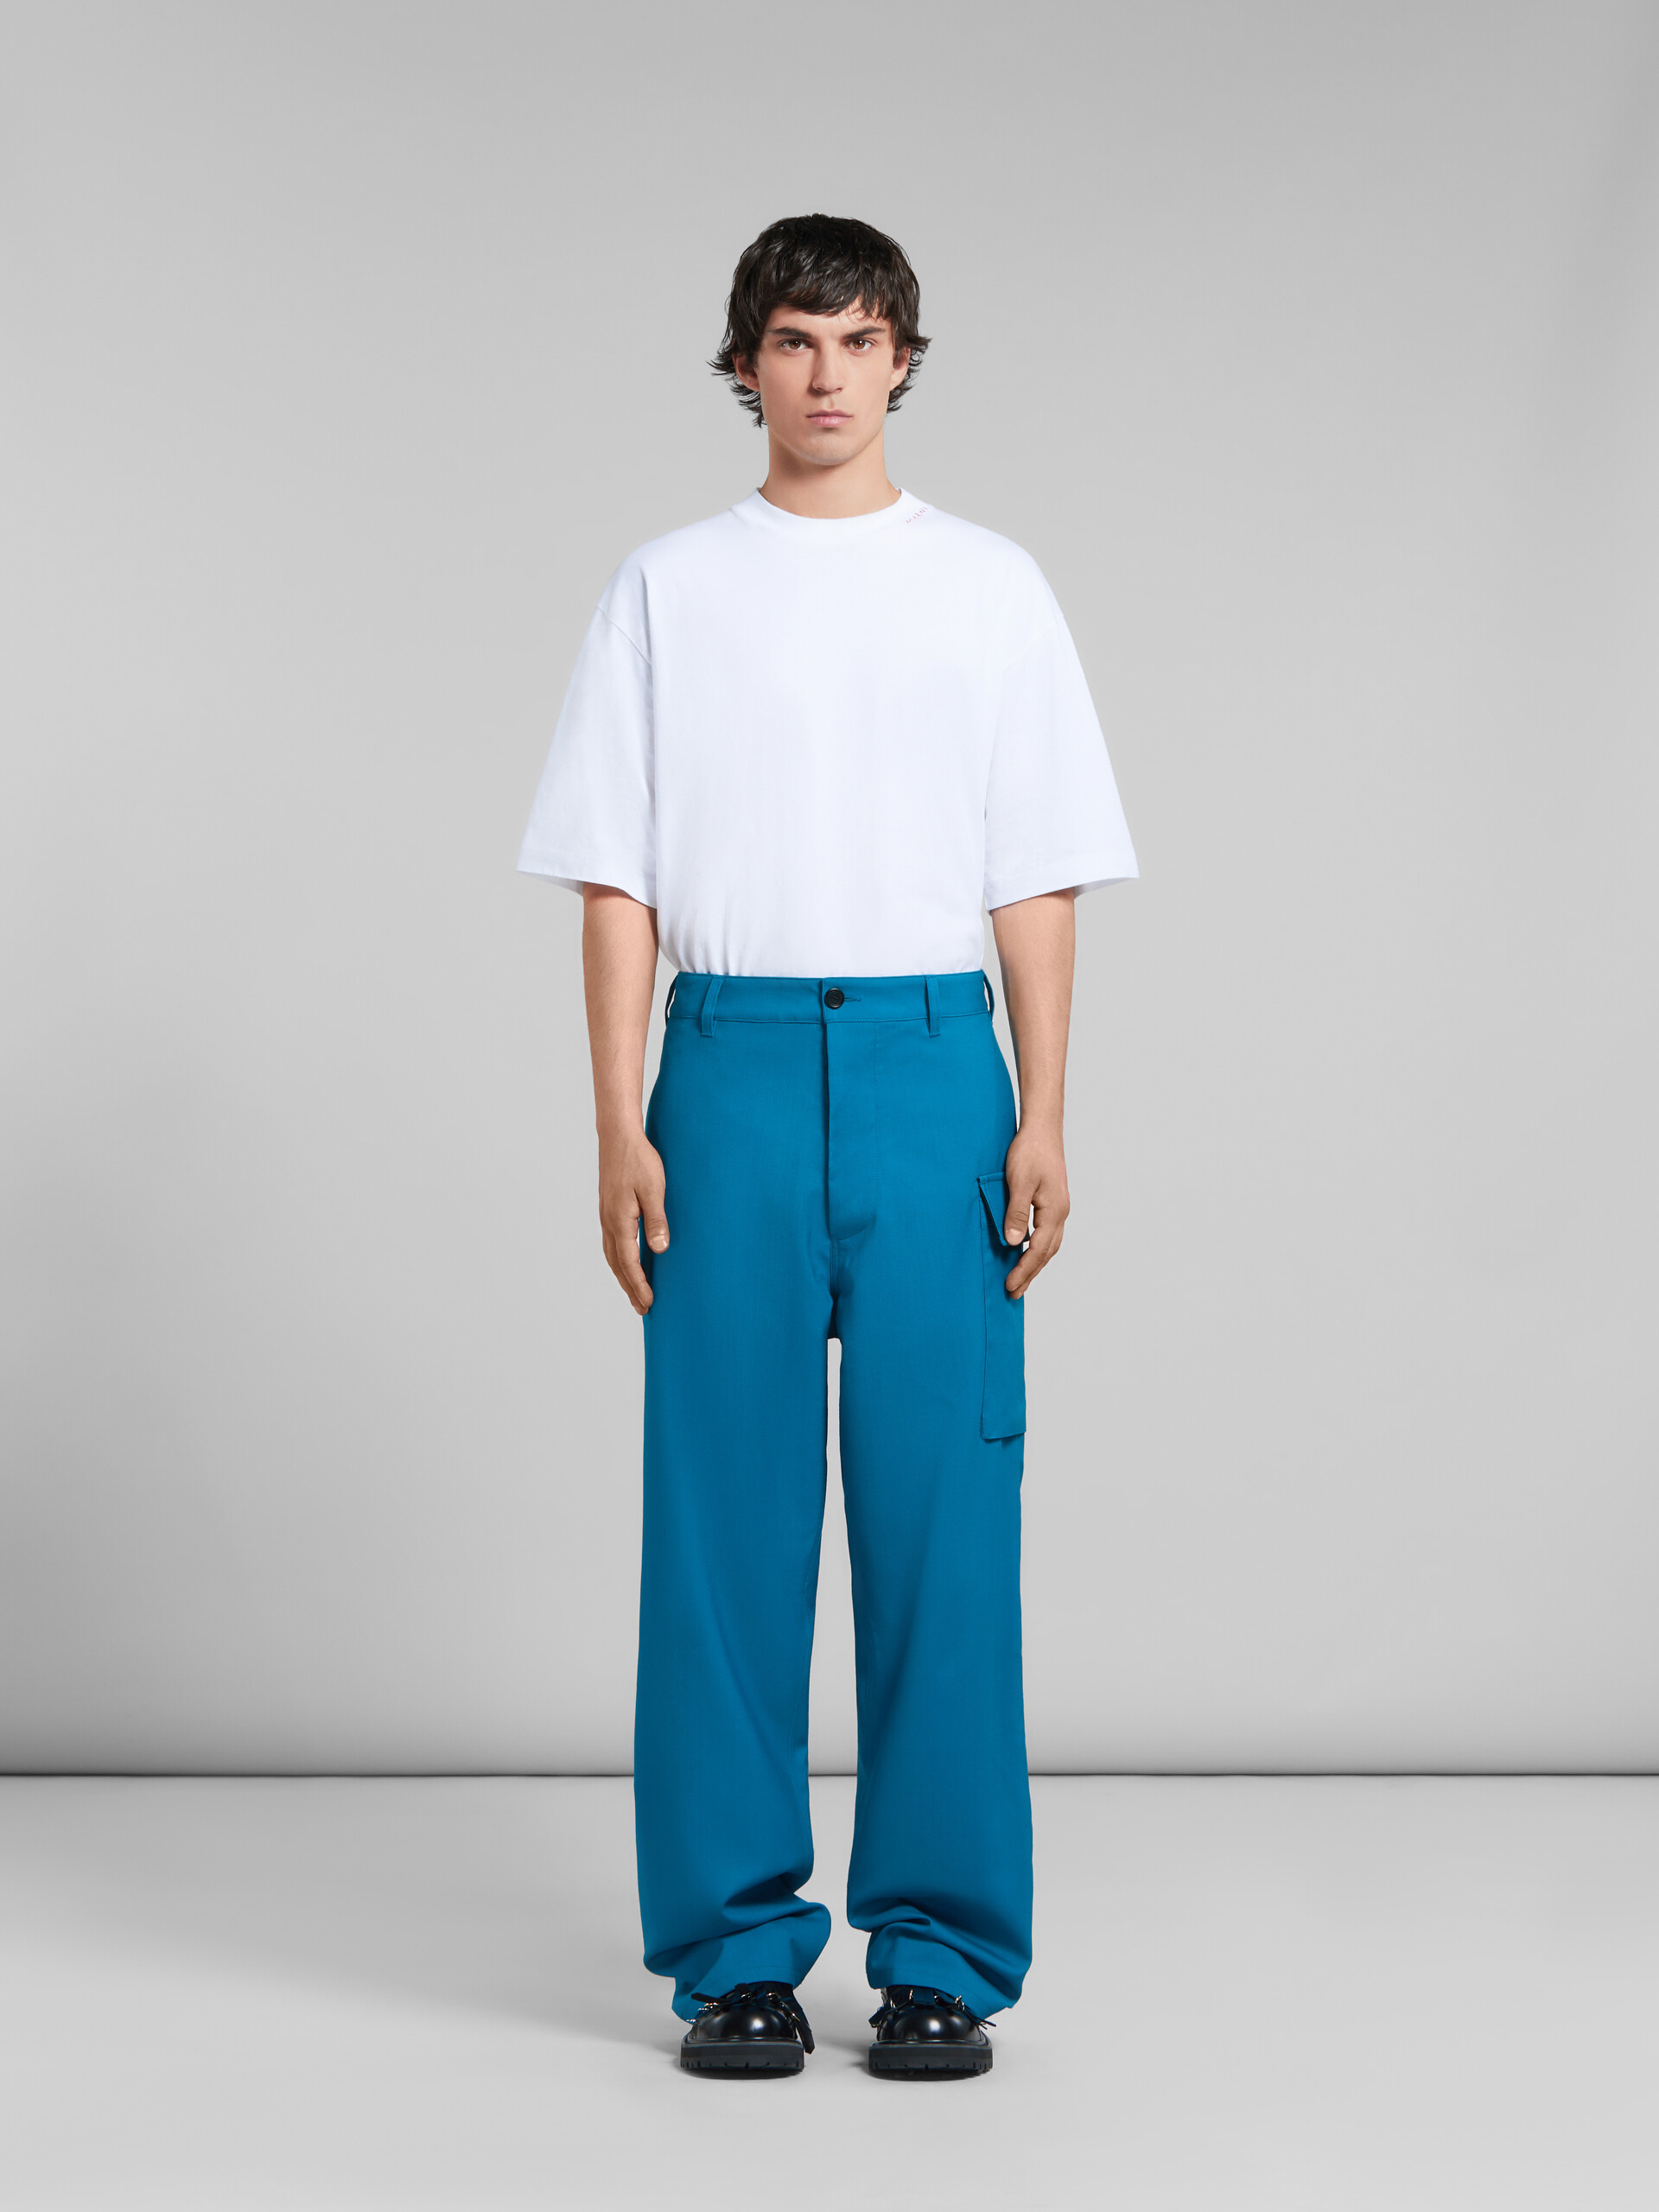 Pantalón de lana tropical verde azulado con bolsillo funcional - Pantalones - Image 2